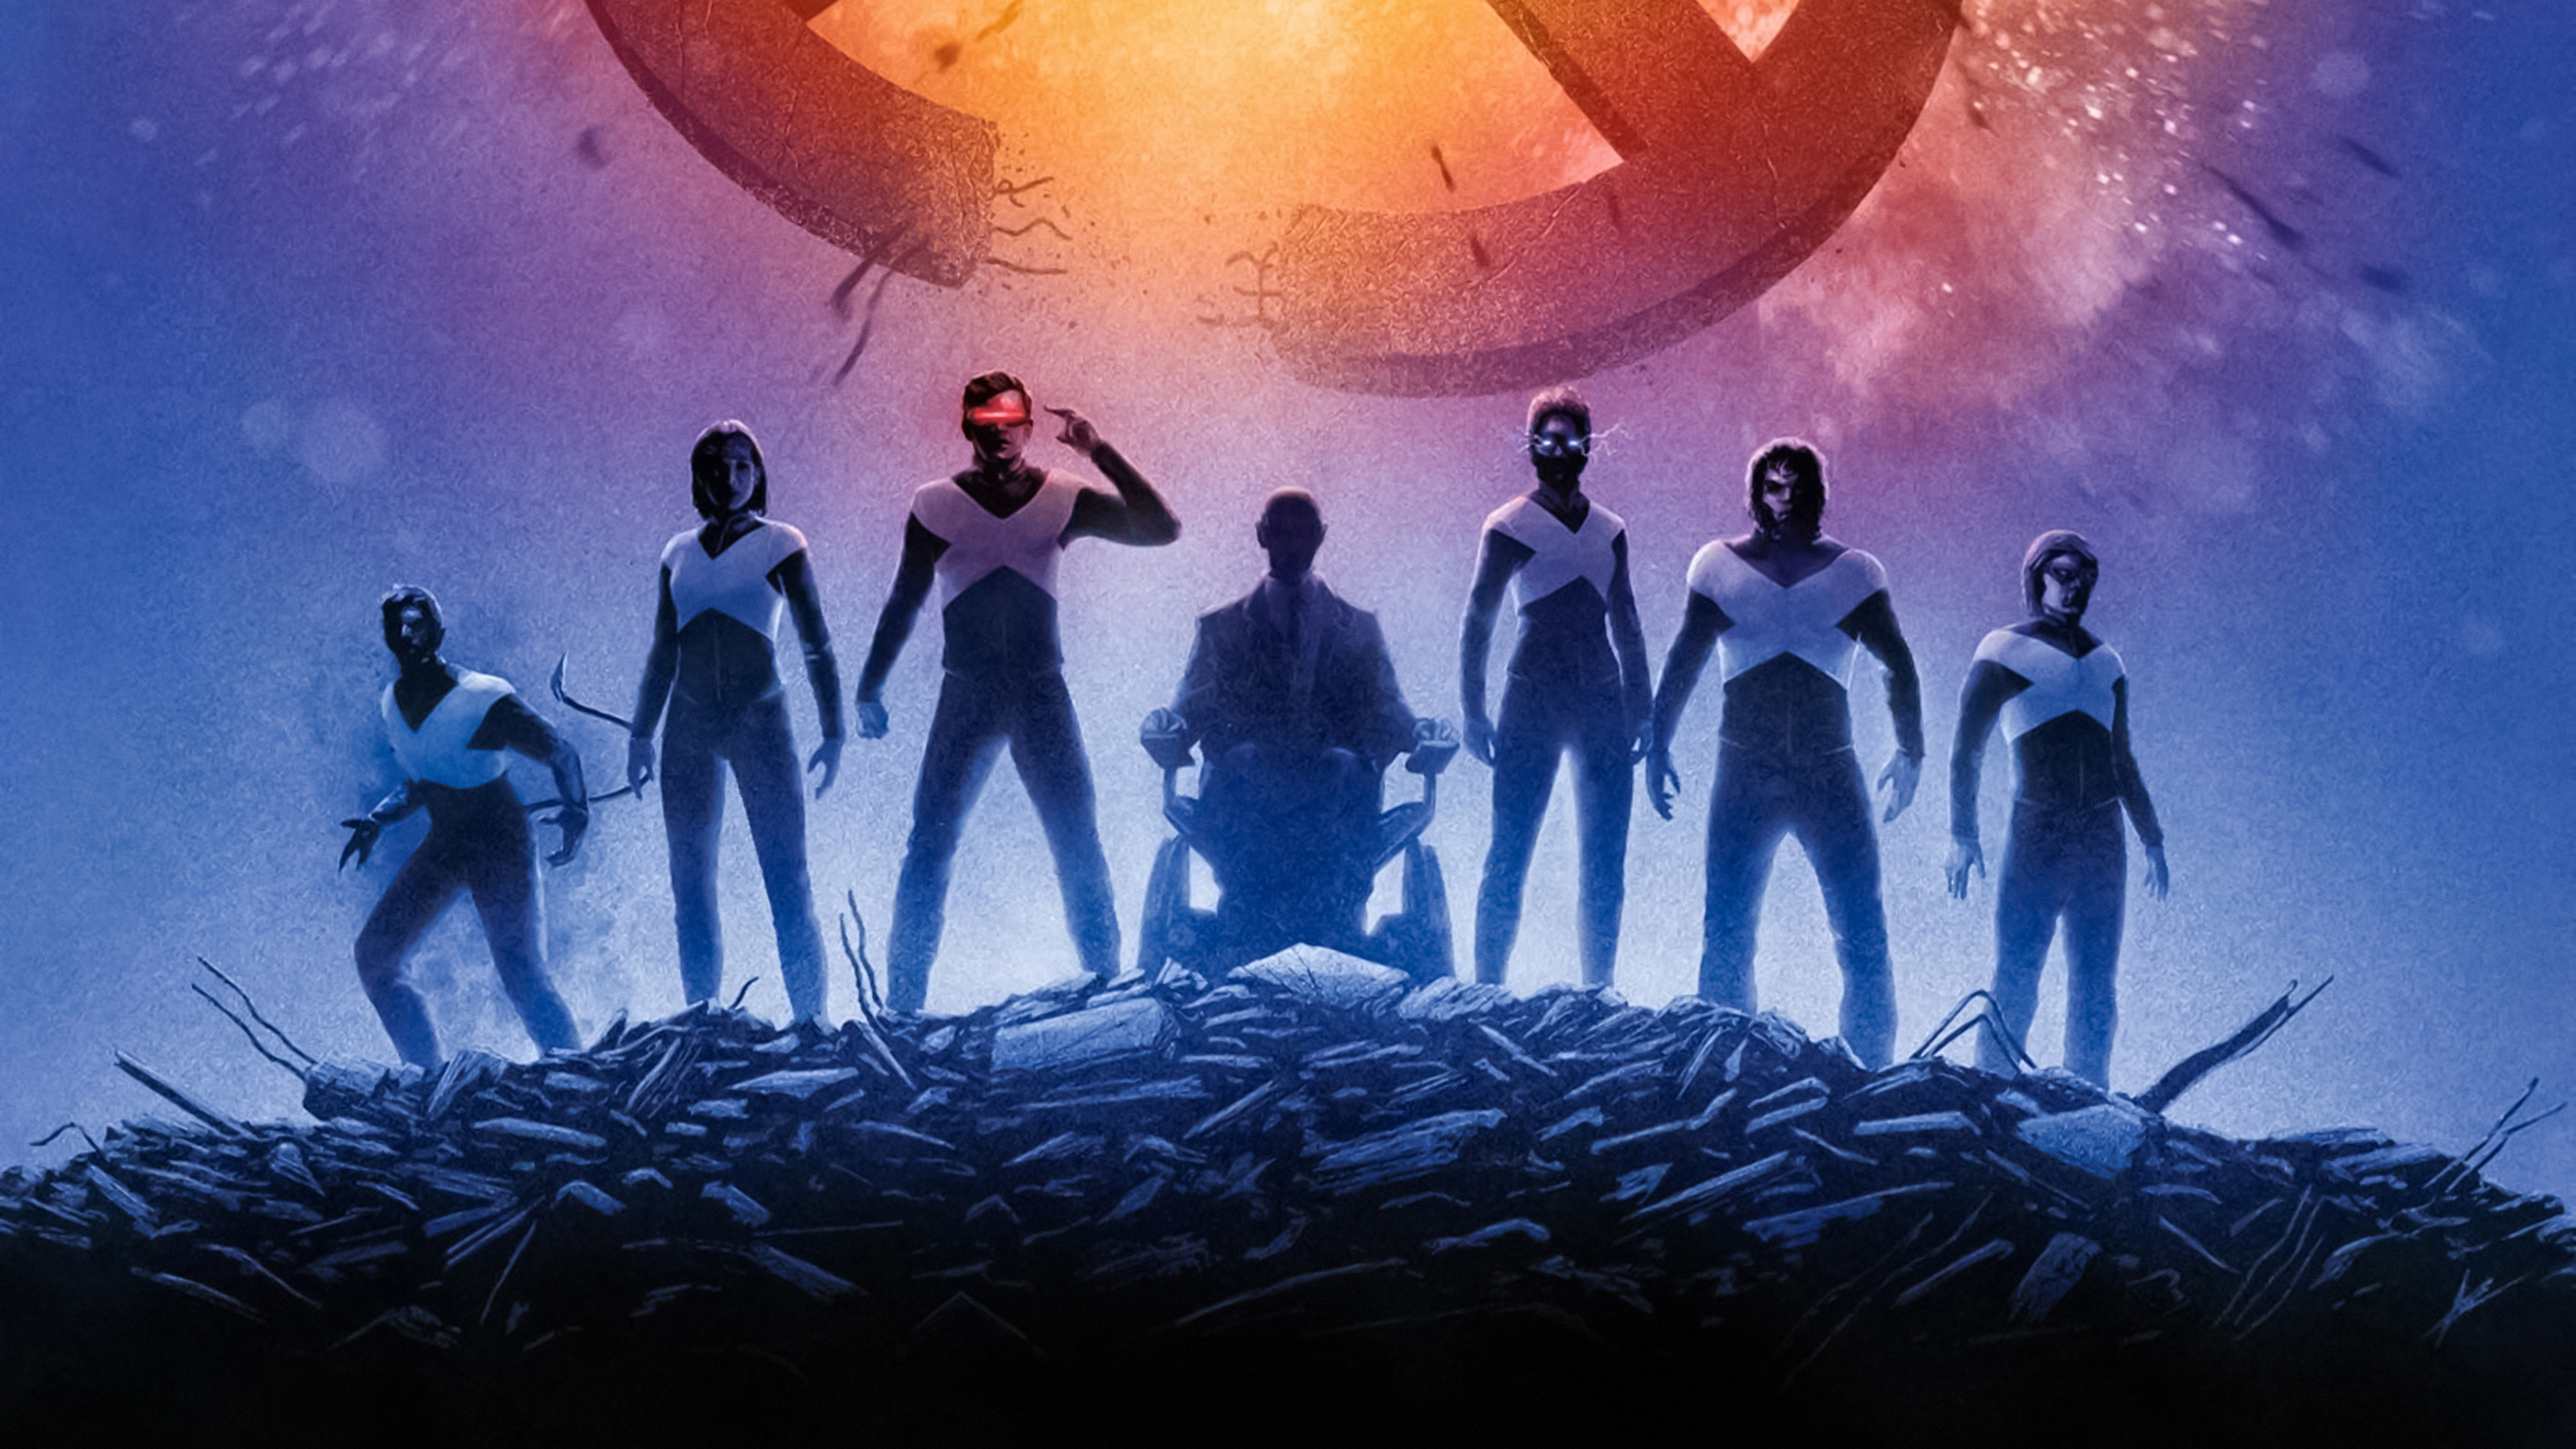 X-Men Dark Phoenix 4K Wallpaper #10 sẽ đưa bạn đến với một thế giới đầy mê hoặc và phiêu lưu. Lấy cảm hứng từ bộ truyện tranh X-Men kinh điển, hình nền này được thiết kế với độ phân giải cao 4K, mang đến màu sắc sống động và chi tiết chân thực. Hãy tải về và trải nghiệm chất lượng hình ảnh tuyệt vời của X-Men Dark Phoenix.